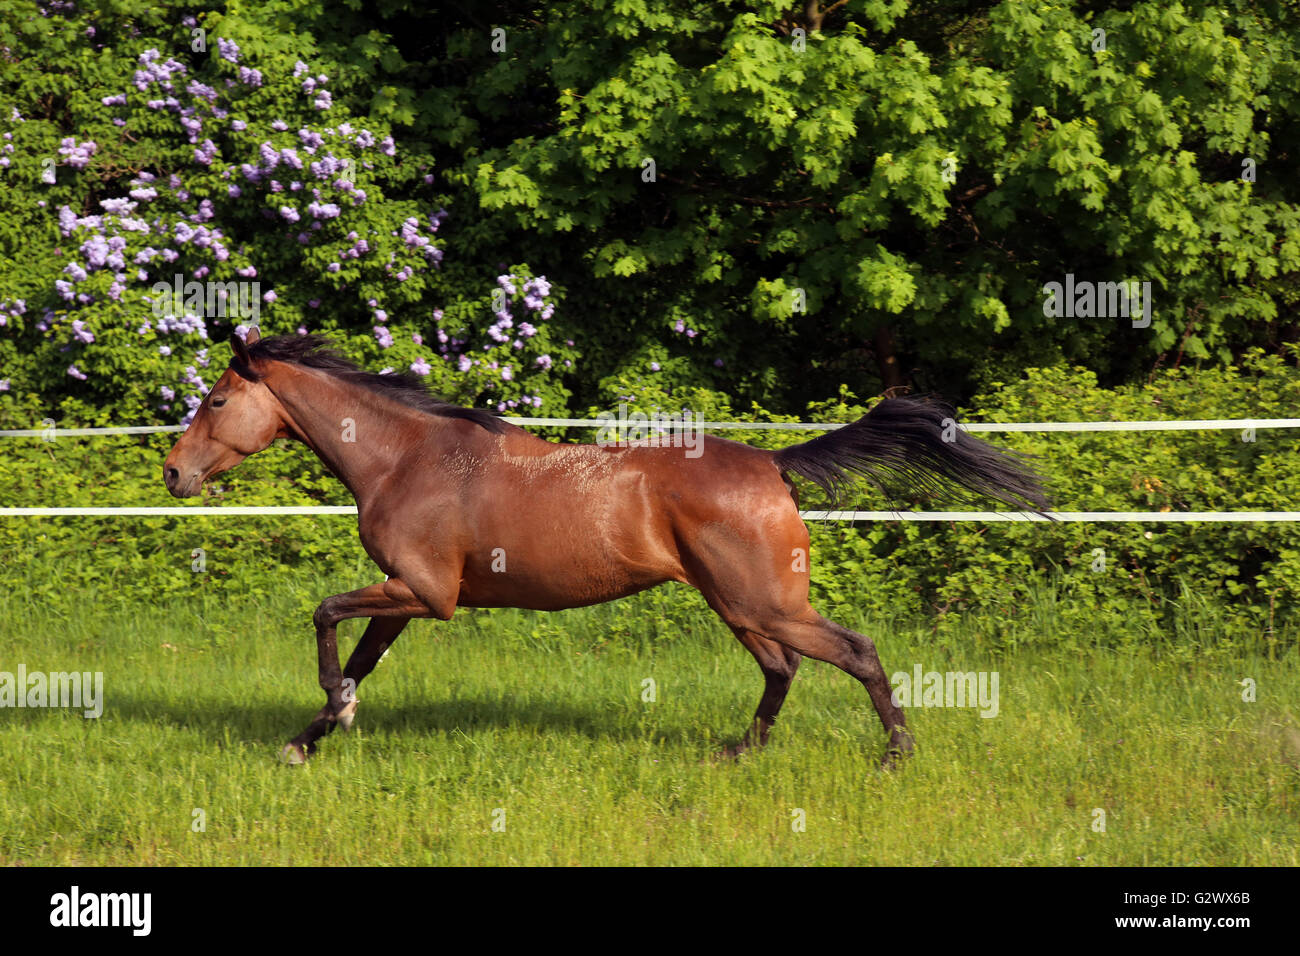 12.05.2015, Neuenhagen, Brandenburg, Deutschland - Pferd im Galopp auf der Weide. 00S150512D311CAROEX. JPG - nicht für den Verkauf in G E R M A N Y, A U S T R I A S W I T Z E R L A N D [MODEL-RELEASE: nicht anwendbar, PROPERTY-RELEASE: Nein, (C) Caro Fotoagentur / Sorge, http://www.caro-images.com, info@carofoto.pl - jegliche Nutzung dieses Bildes unterliegt GEMA!] Stockfoto